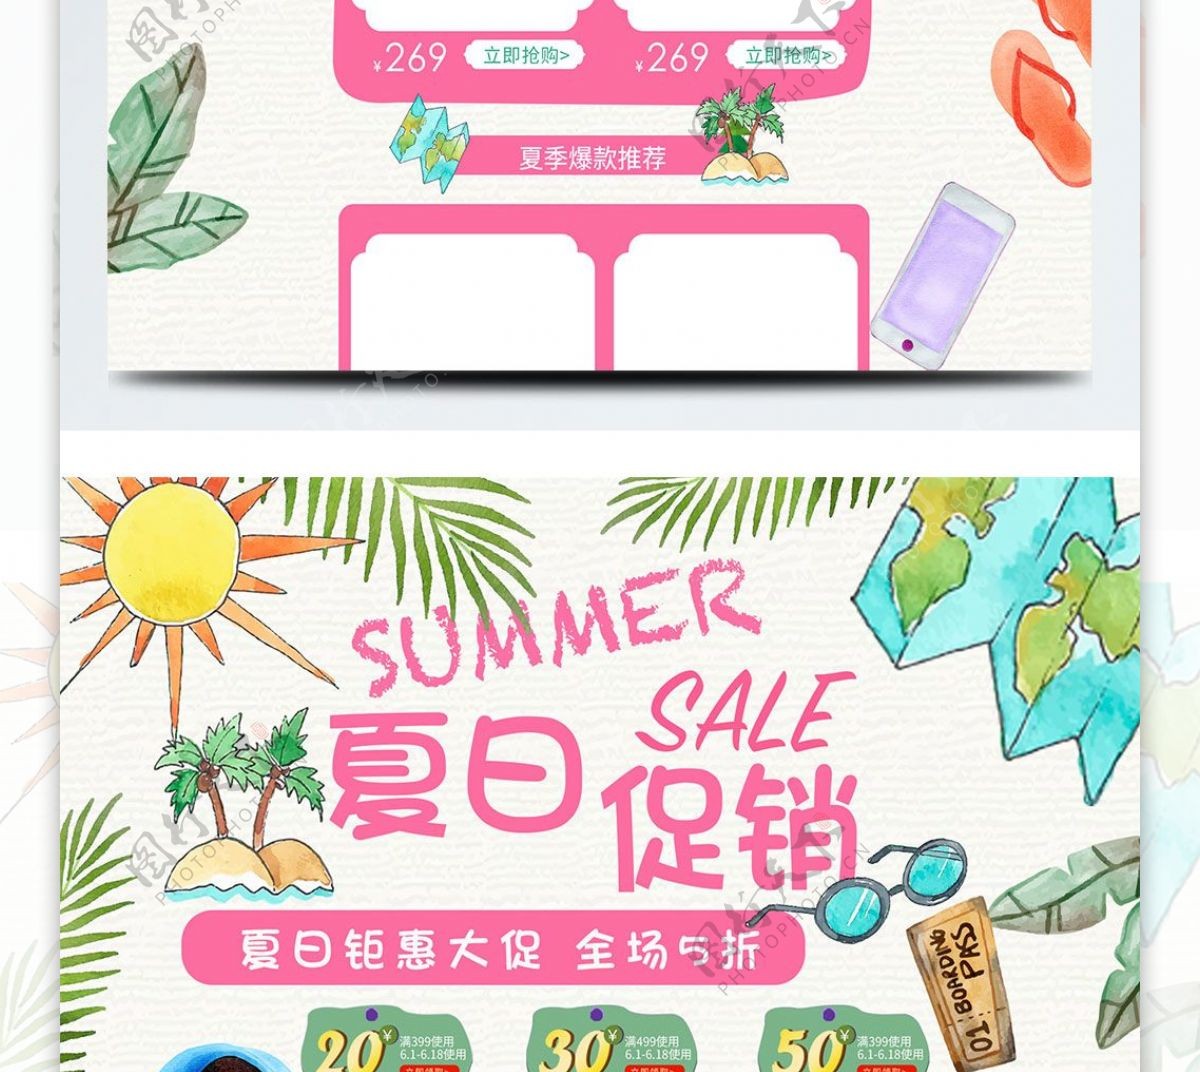 2018夏季促销天猫淘宝电商首页模板